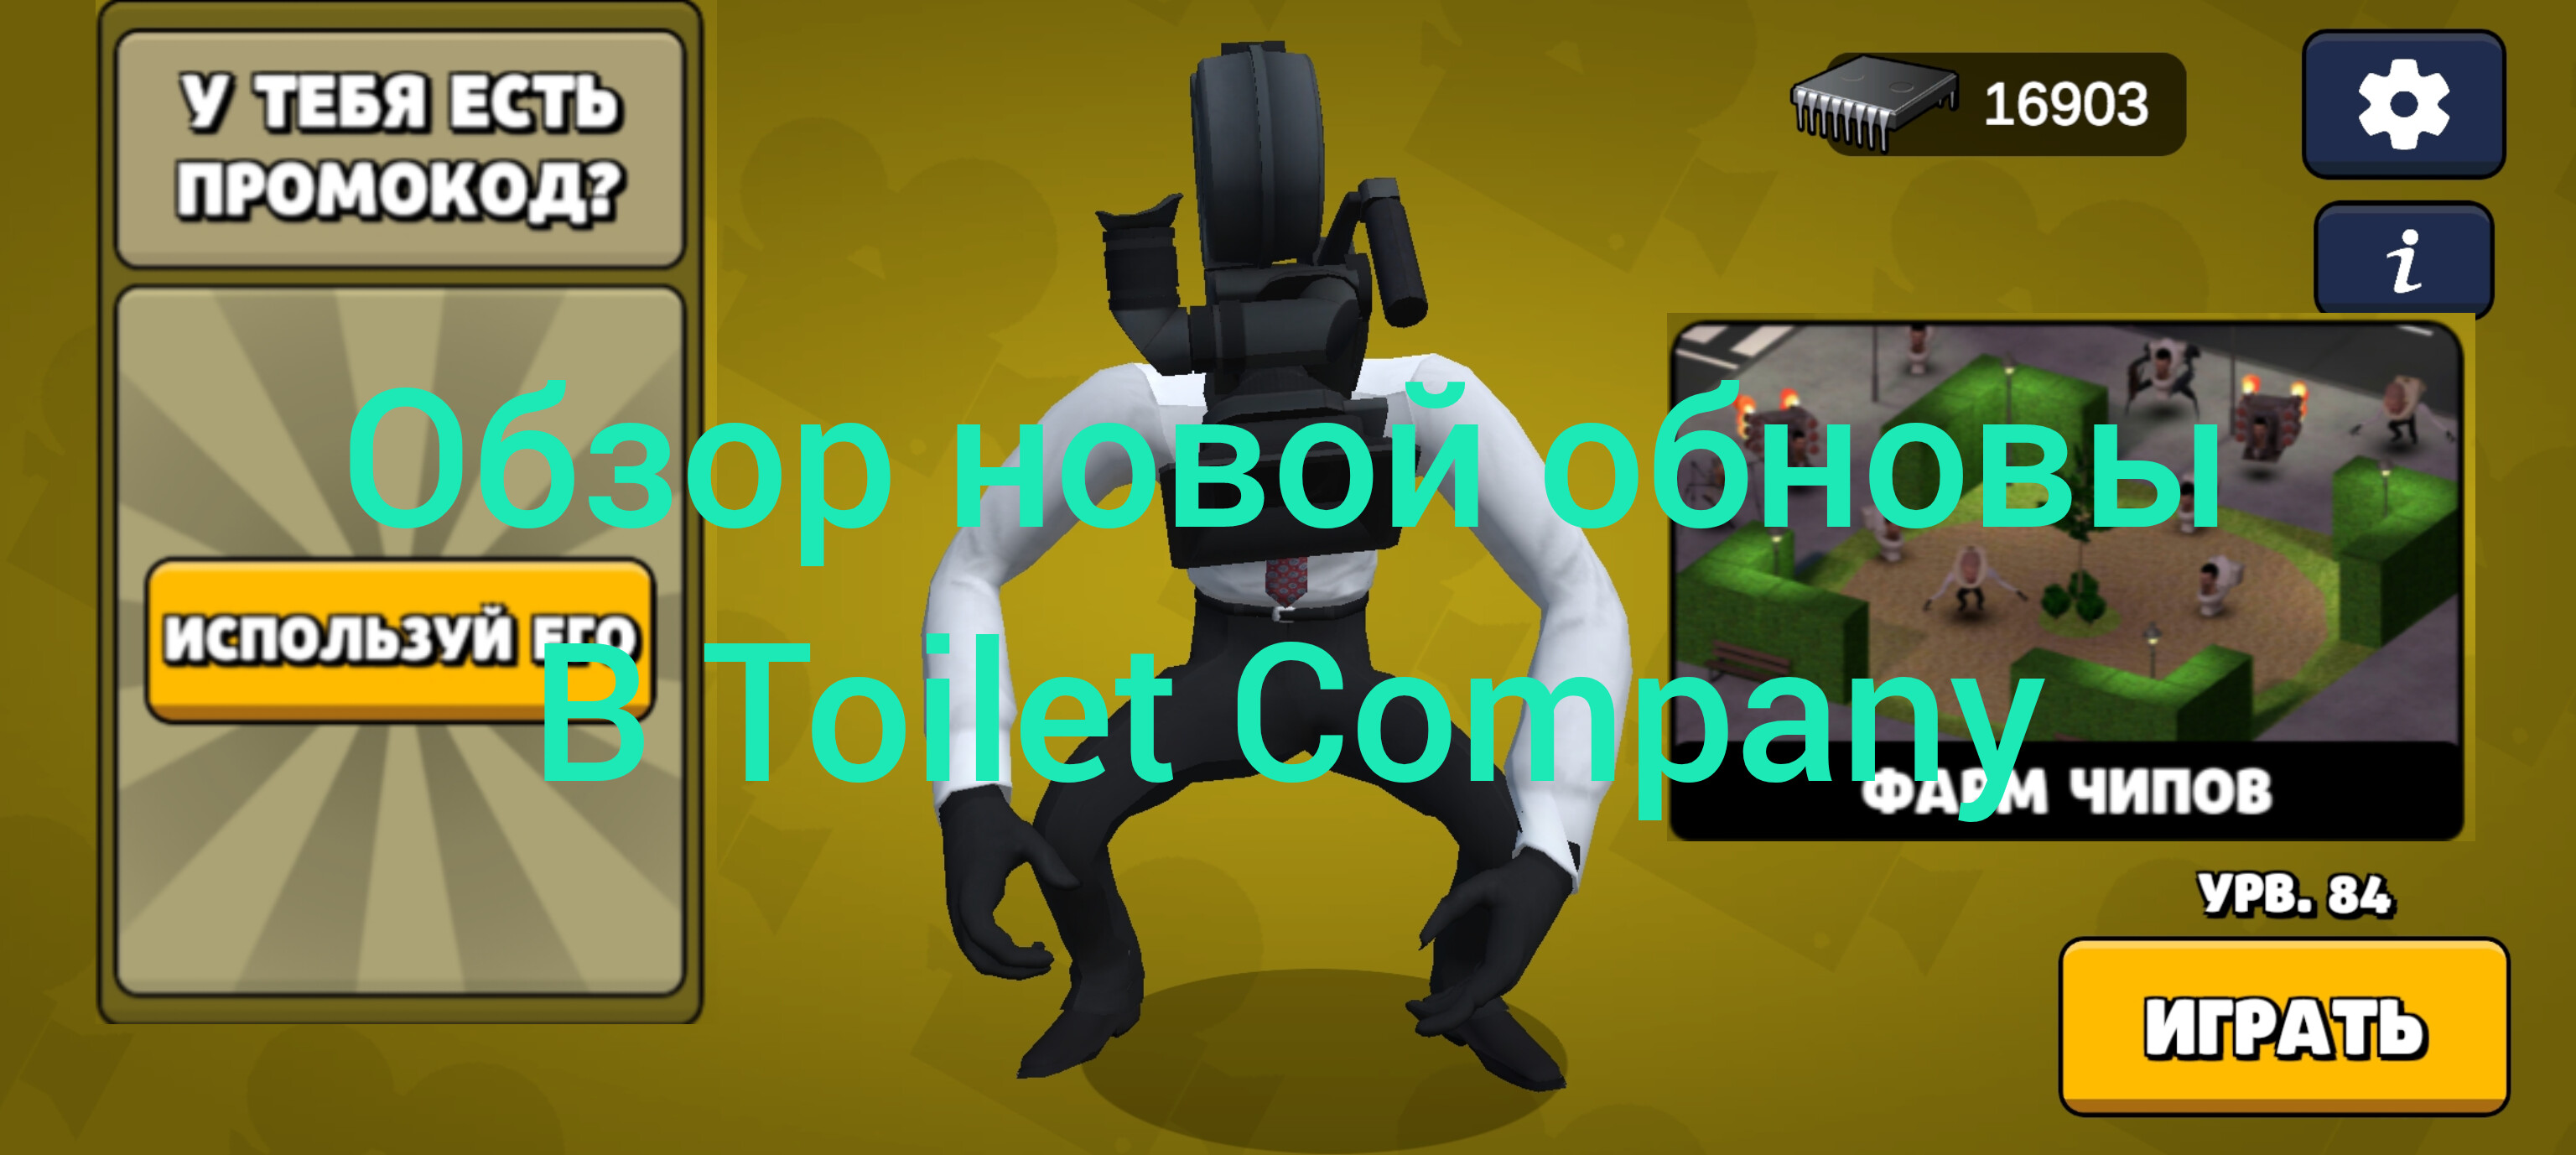 Обзор на новую обнову в Toilet Company